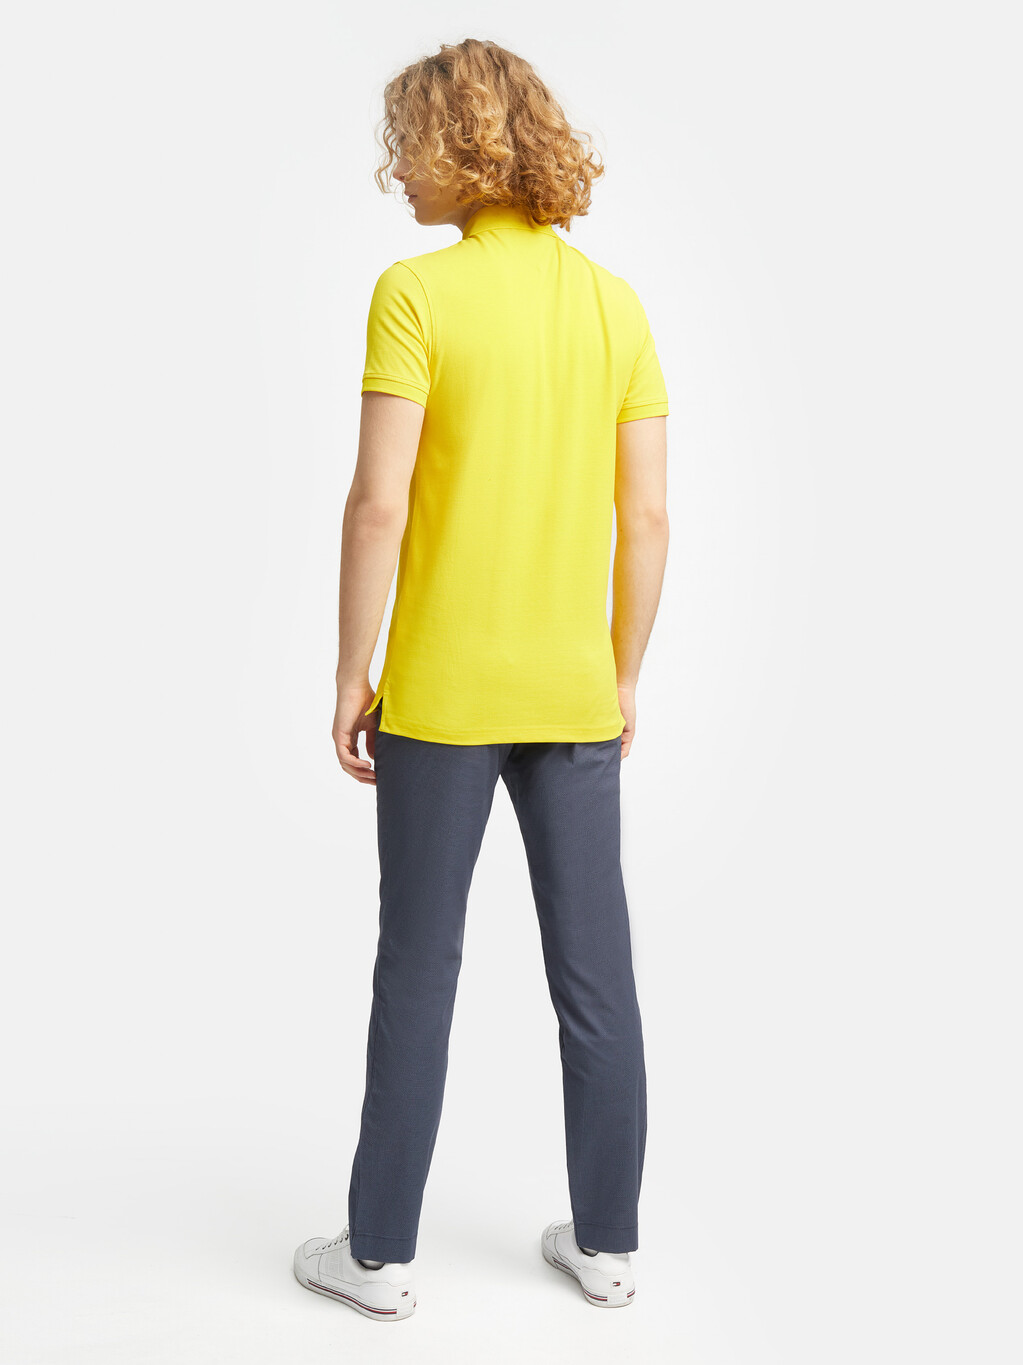 1985 系列修身 Polo 衫, Vivid Yellow, hi-res